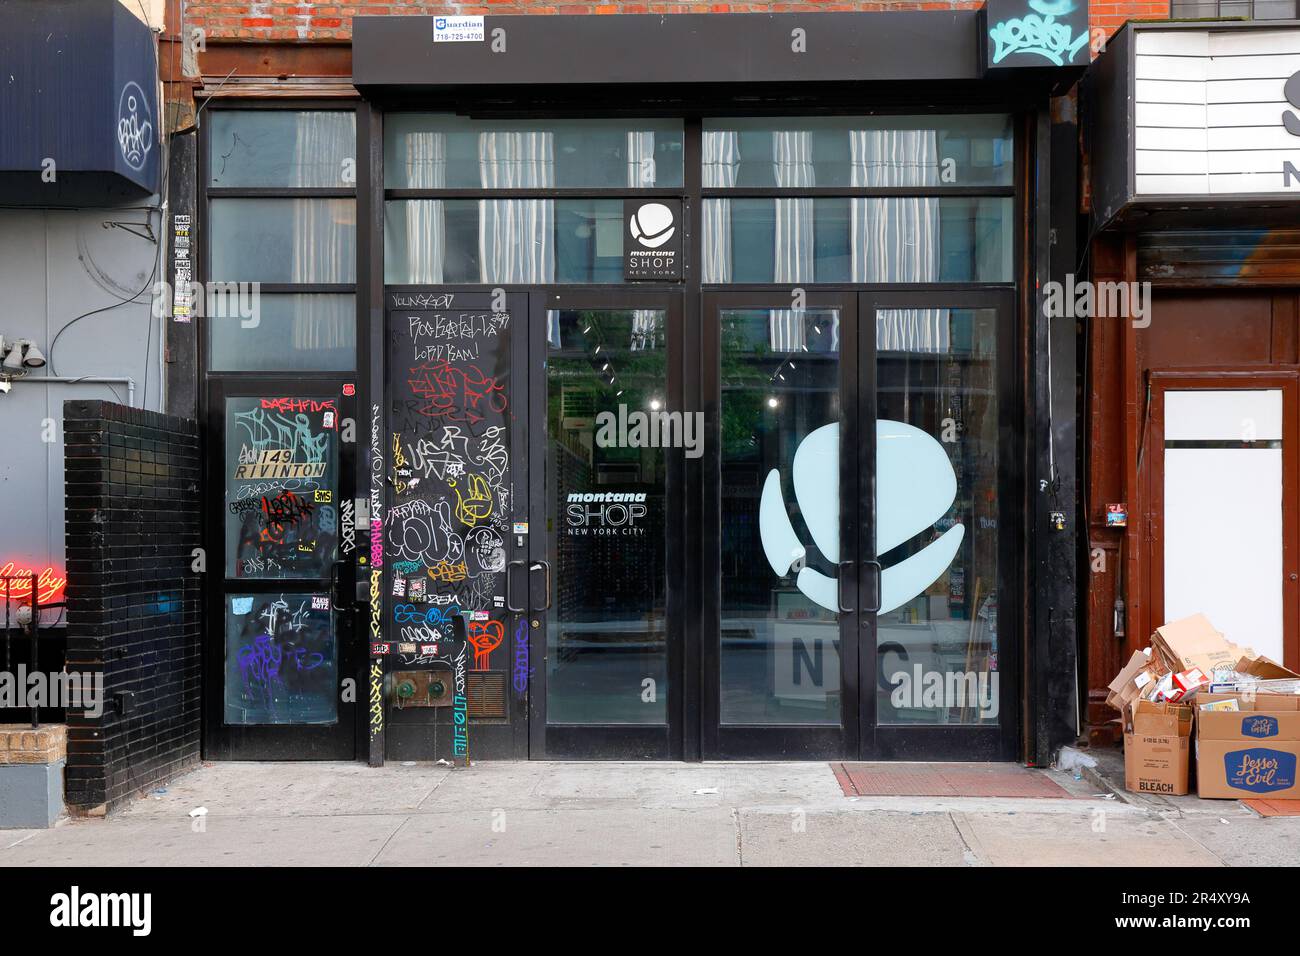 Montana Shop, 149 Rivington St, New York, New York, New York, New York, New York, New York, USA: Ein Laden mit Spraypaint- und Graffiti-Artikeln in der Lower East Side von Manhattan. Stockfoto